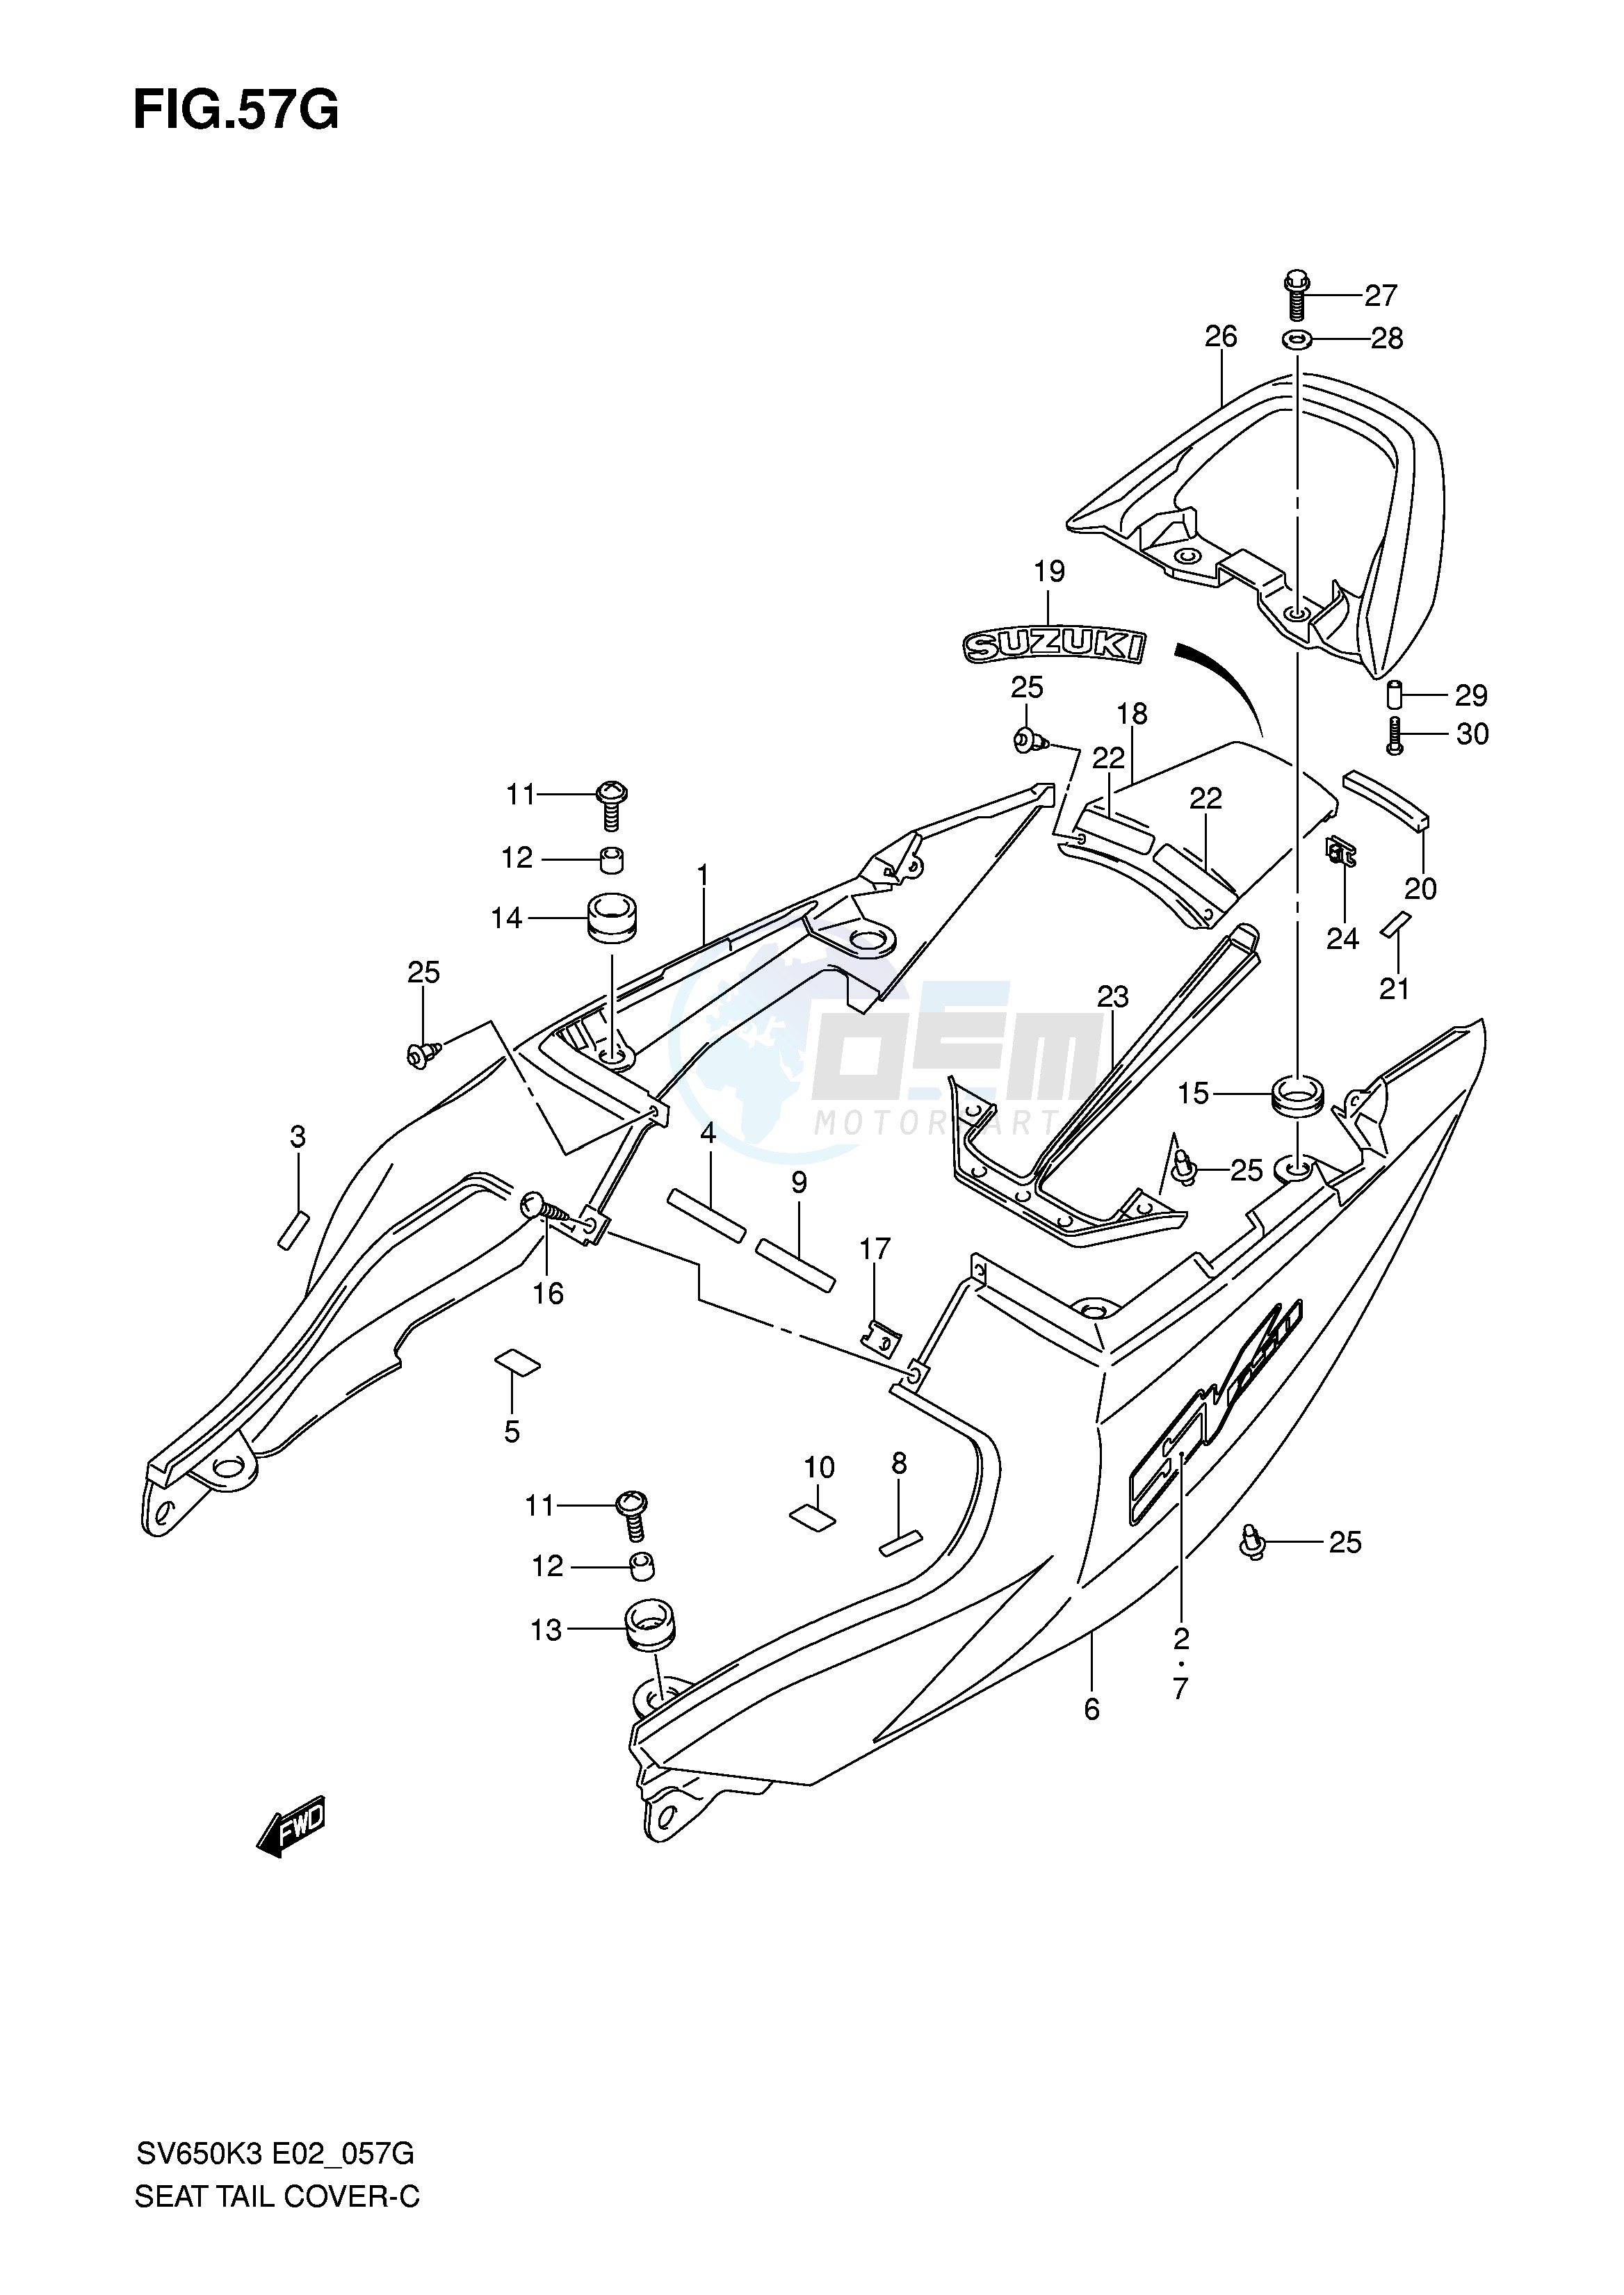 SEAT TAIL COVER (SV650K7 AK7 UAK7) blueprint